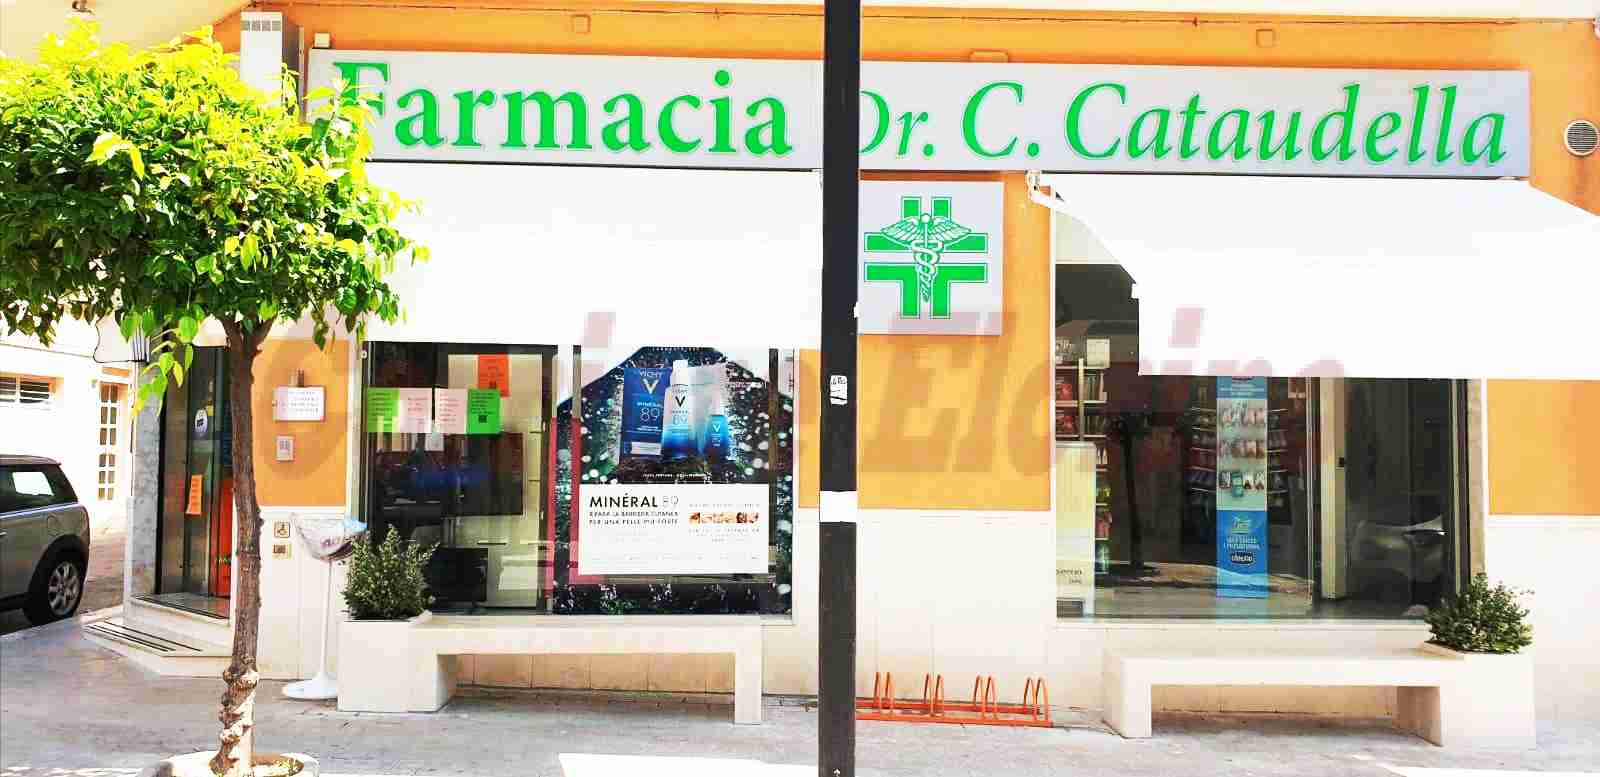 Le “panchine dell’ospitalità” (non solo per i clienti); il progetto della Farmacia Cataudella al servizio della città